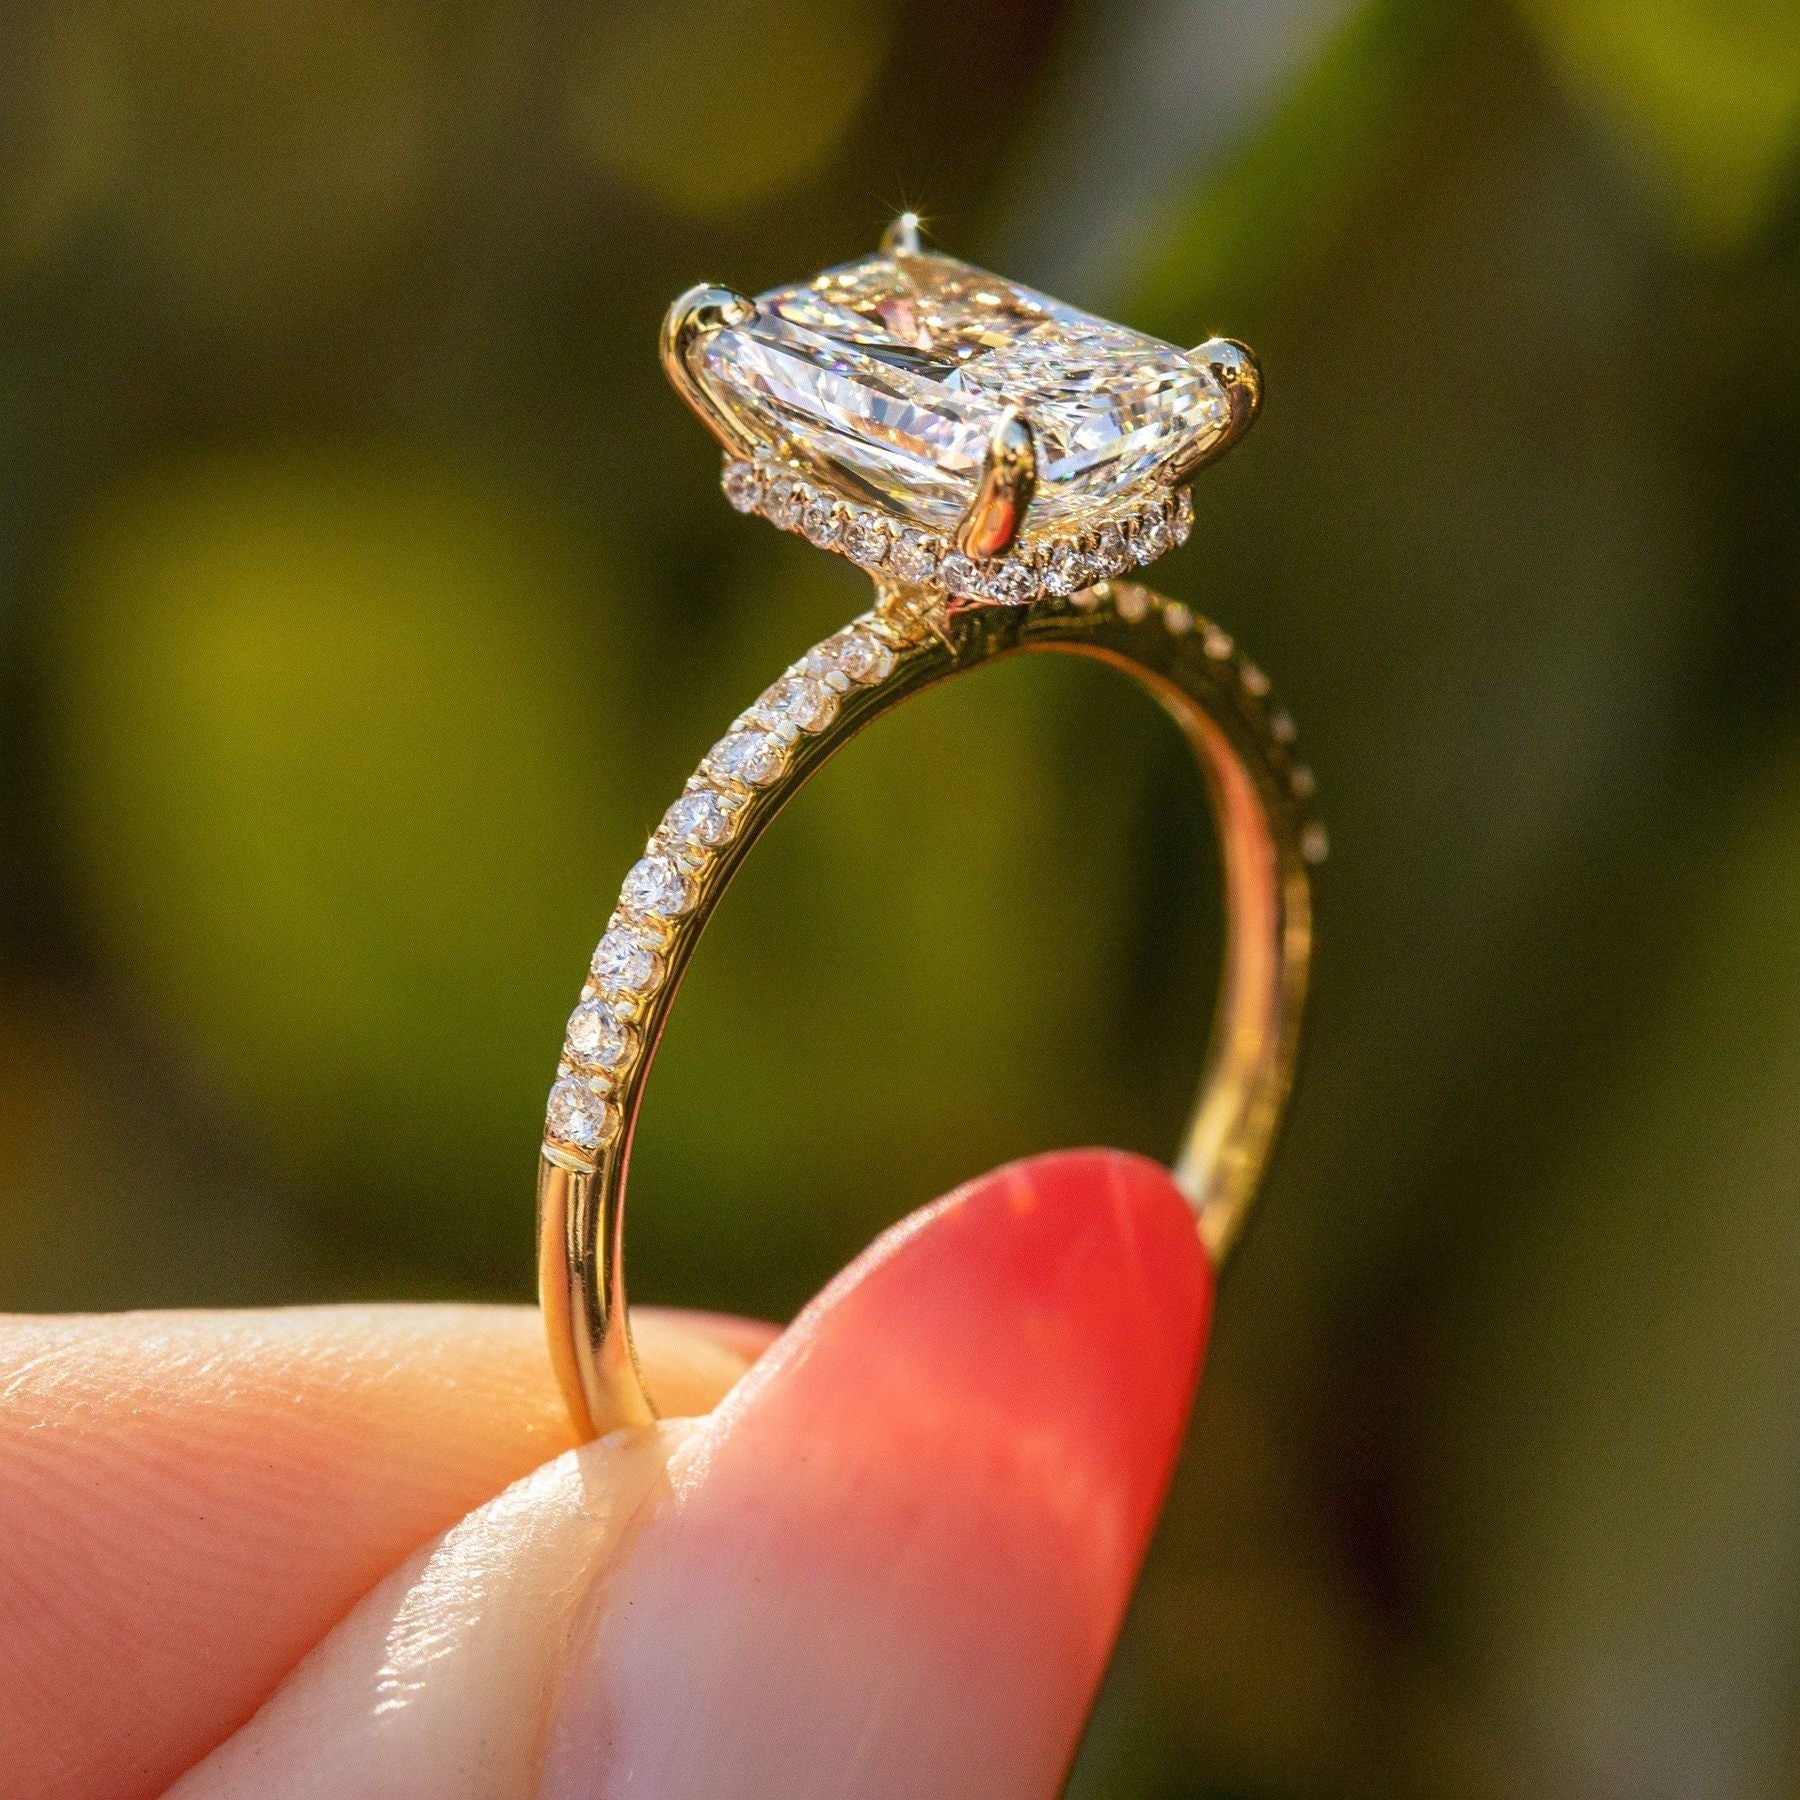 Claudette - Diamond and Opal Unique Engagement Ring